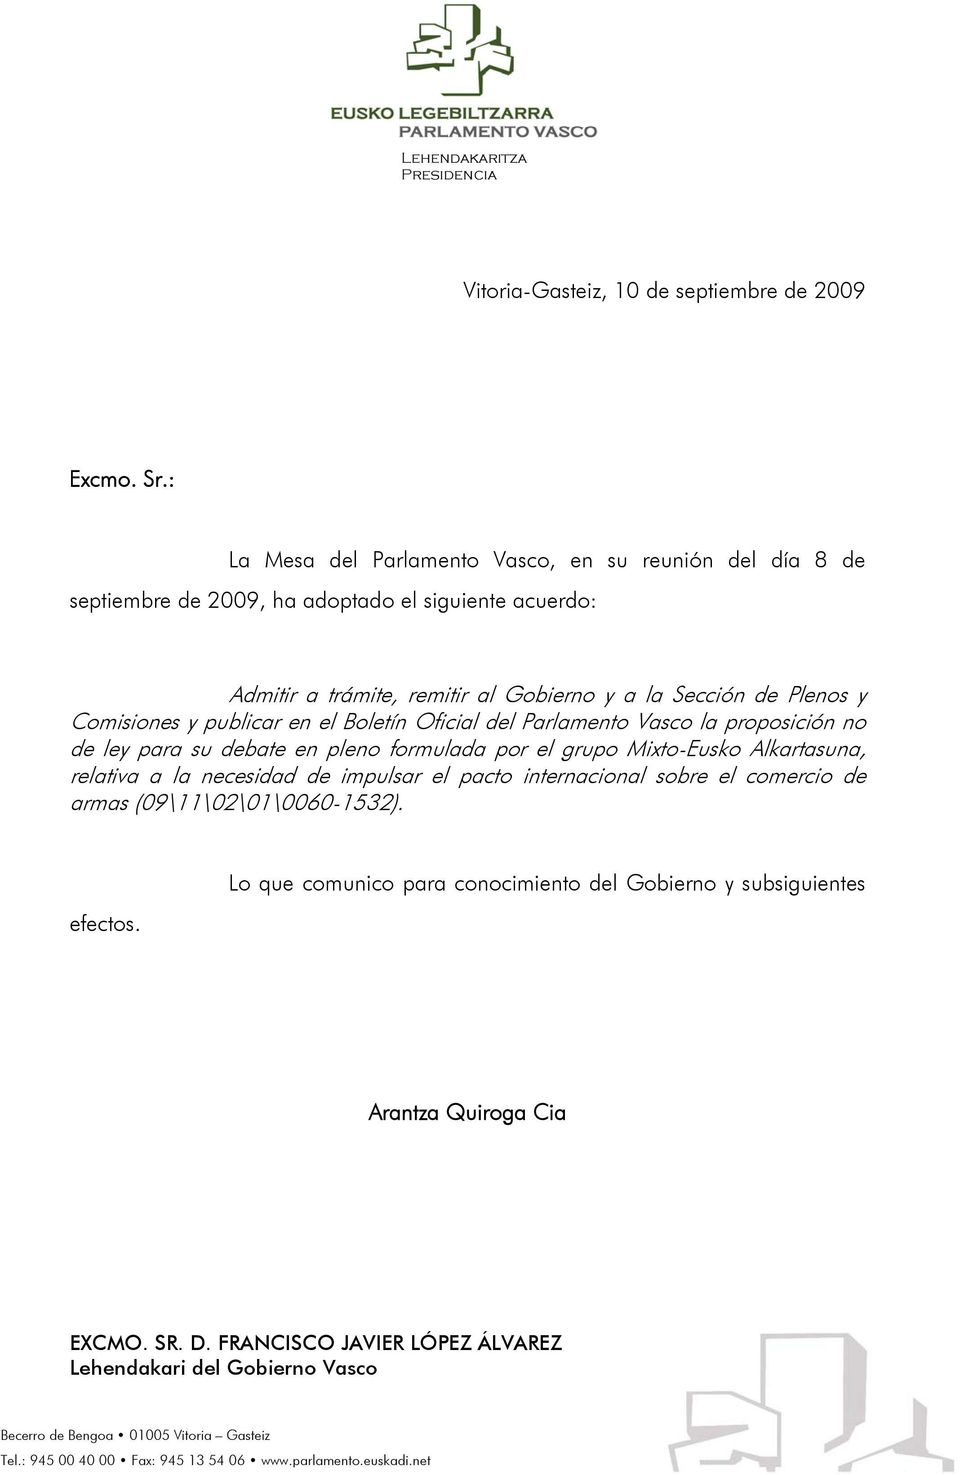 publicar en el Boletín Oficial del Parlamento Vasco la proposición no de ley para su debate en pleno formulada por el grupo Mixto-Eusko Alkartasuna, relativa a la necesidad de impulsar el pacto